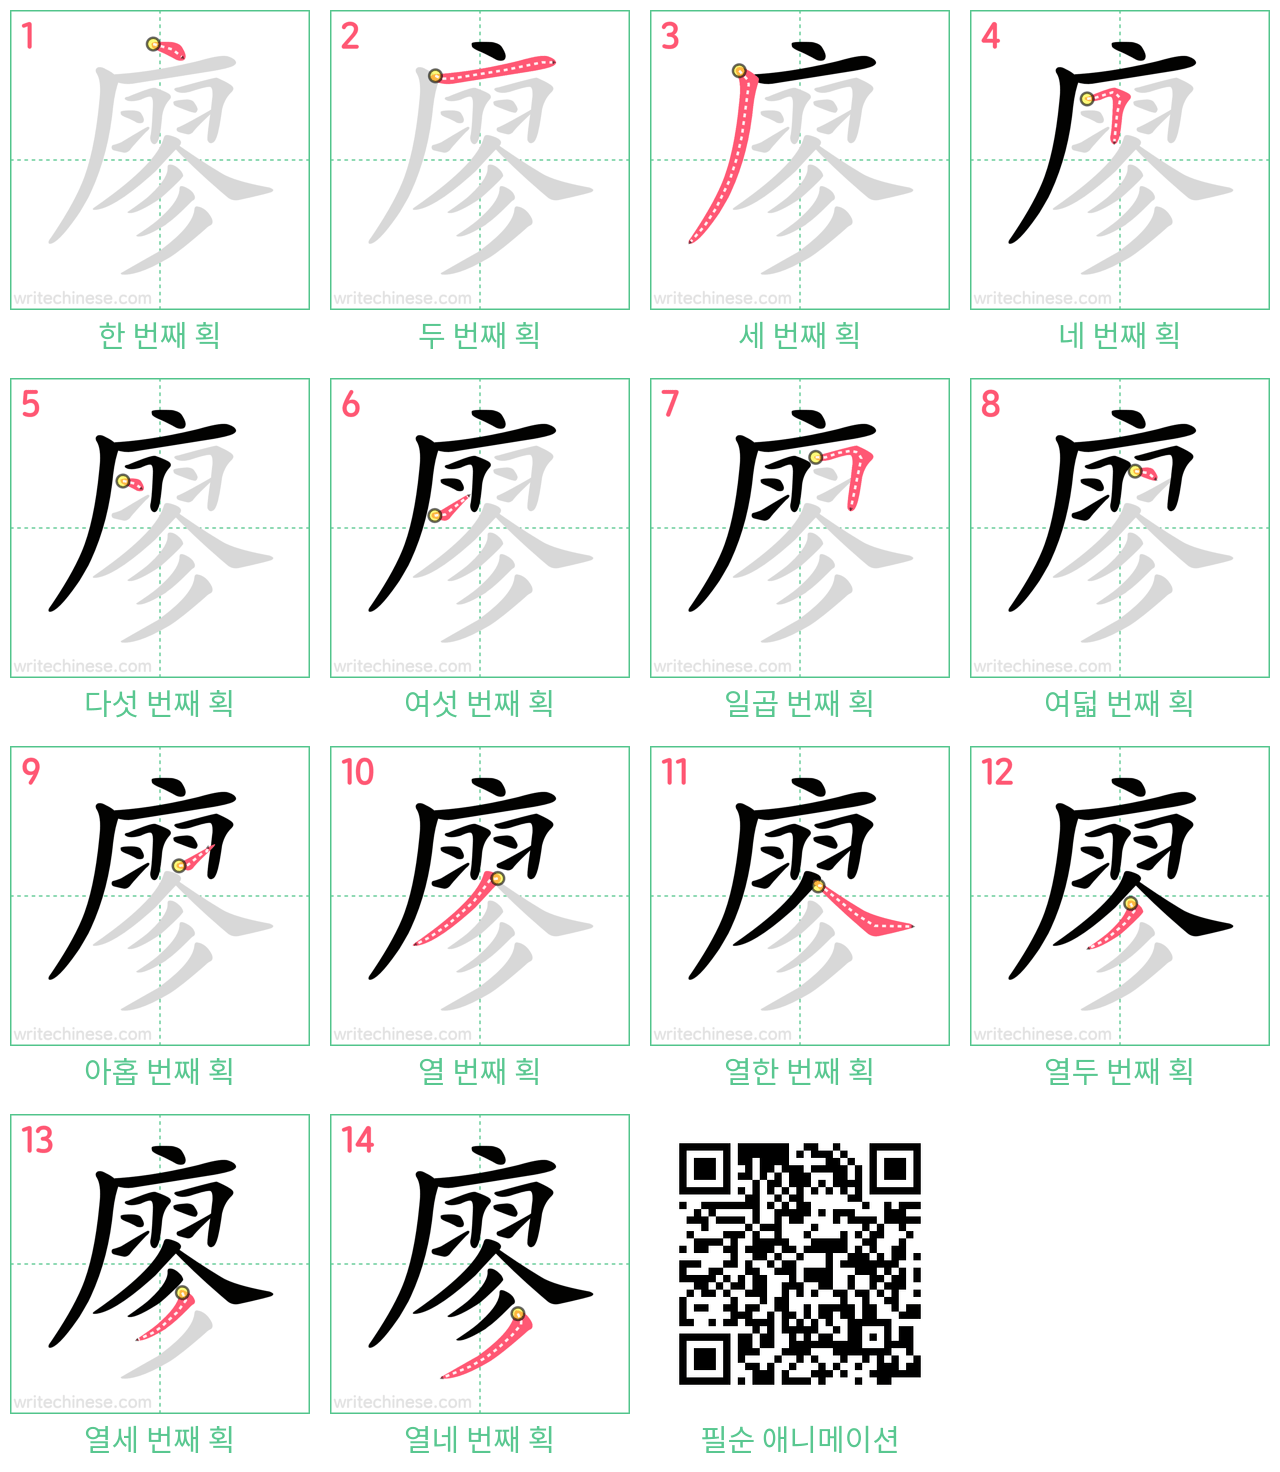 廖 step-by-step stroke order diagrams